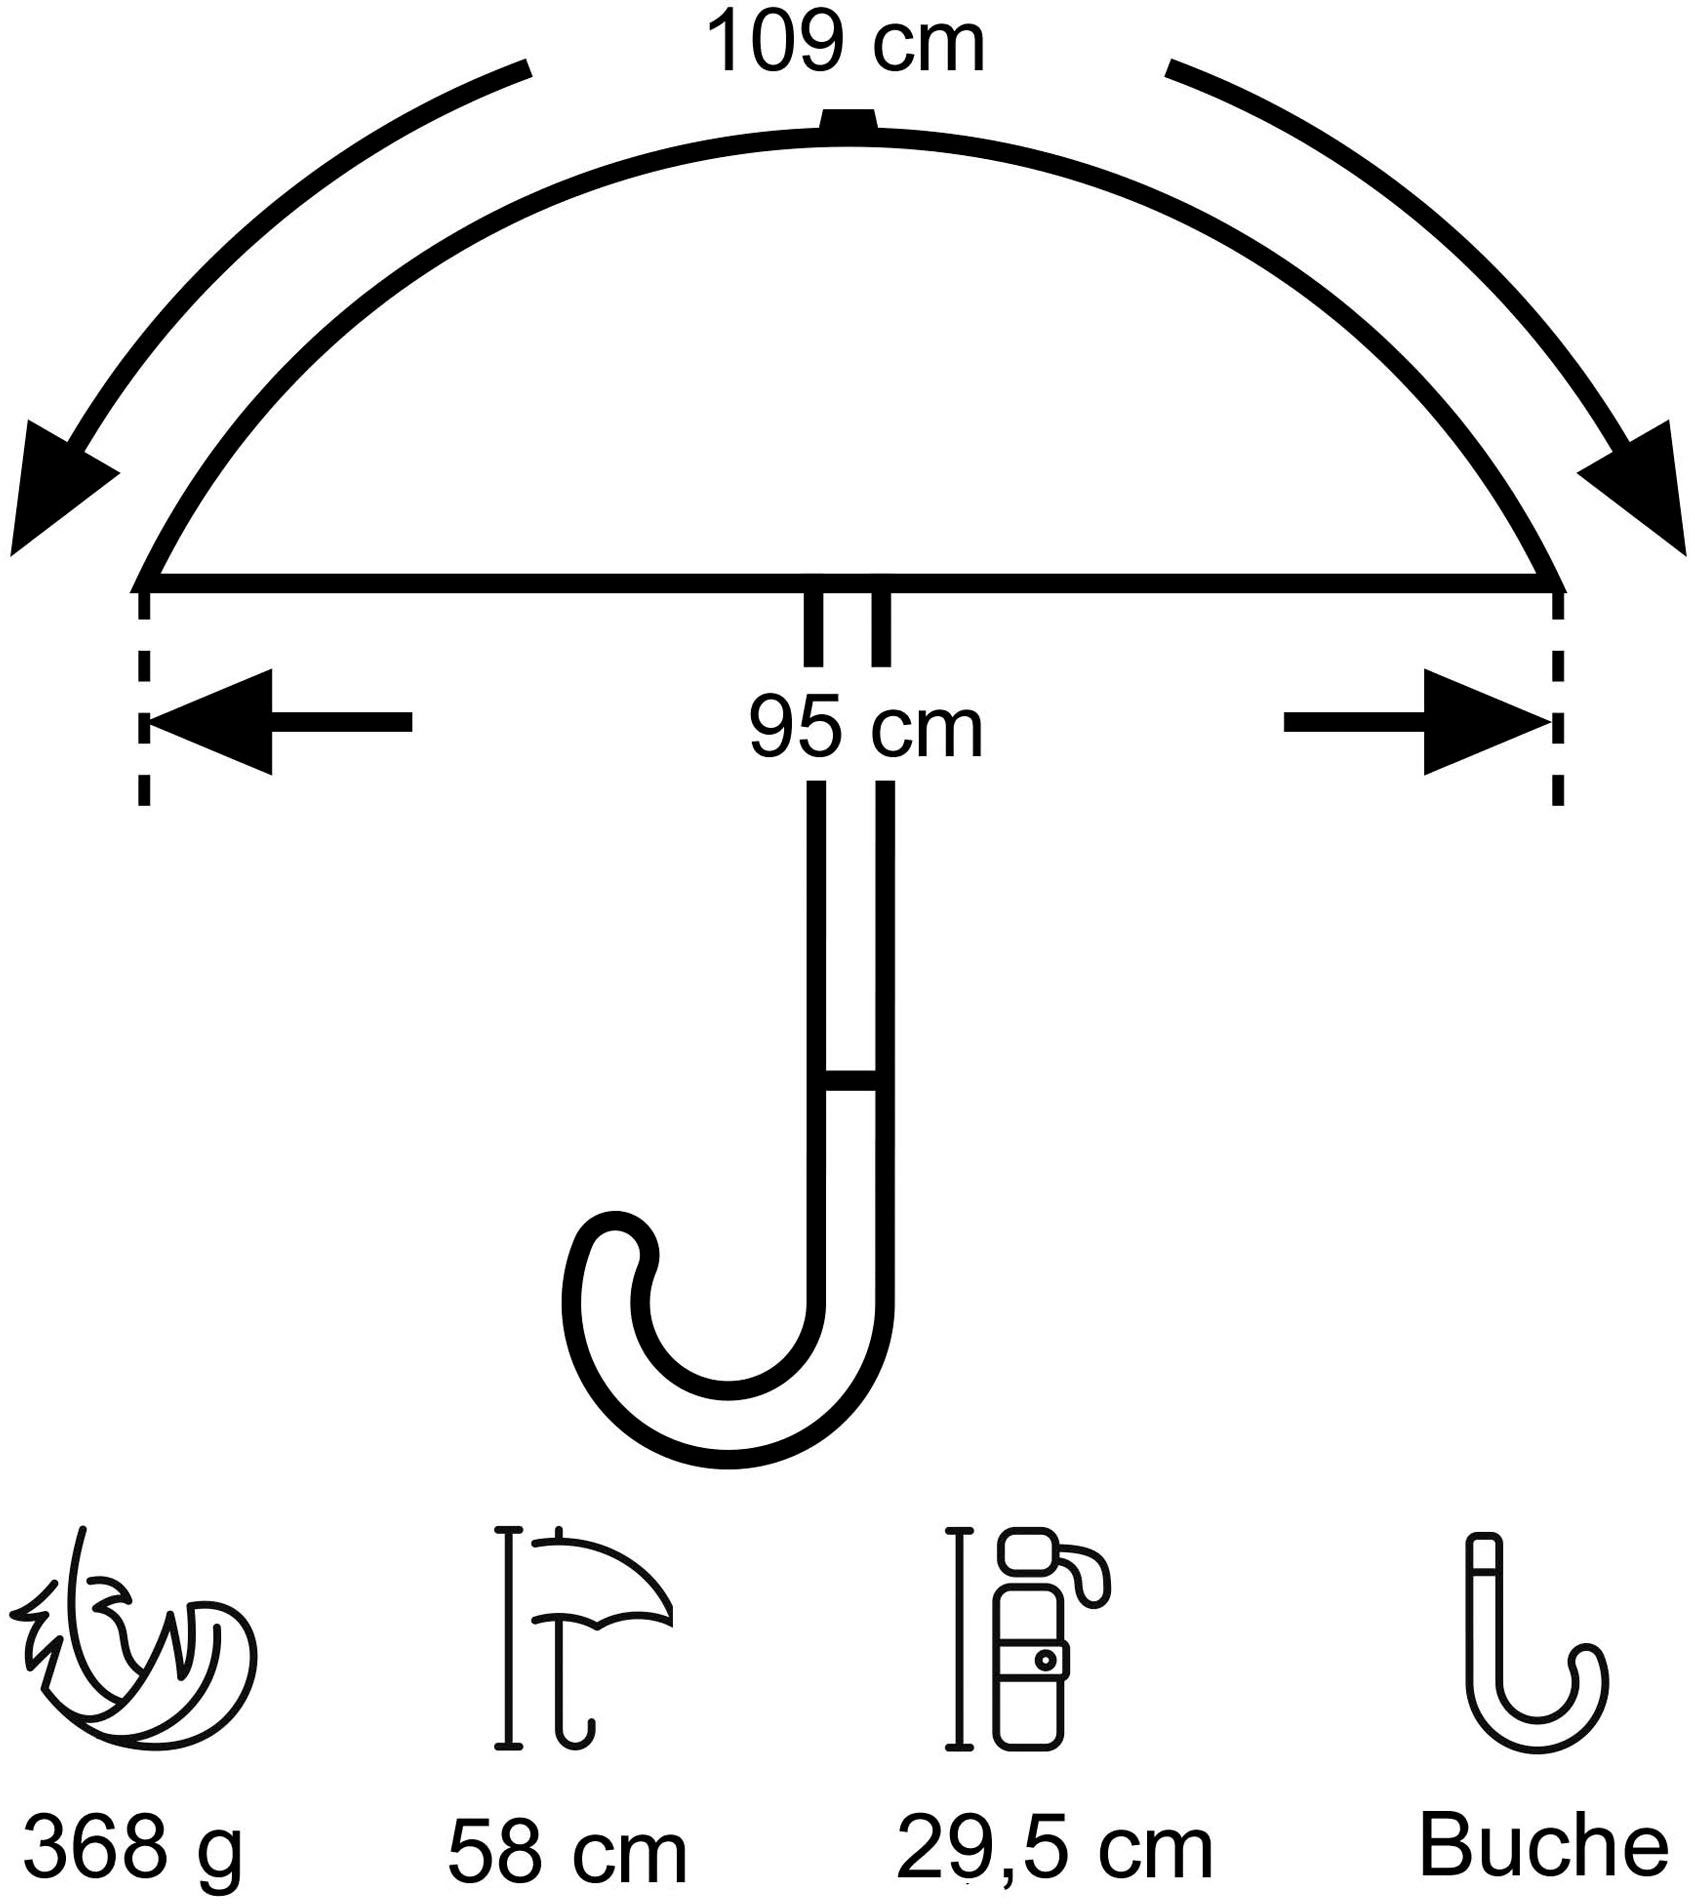 EuroSCHIRM® Taschenregenschirm marine, Umwelt-Taschenschirm, Kreise blau